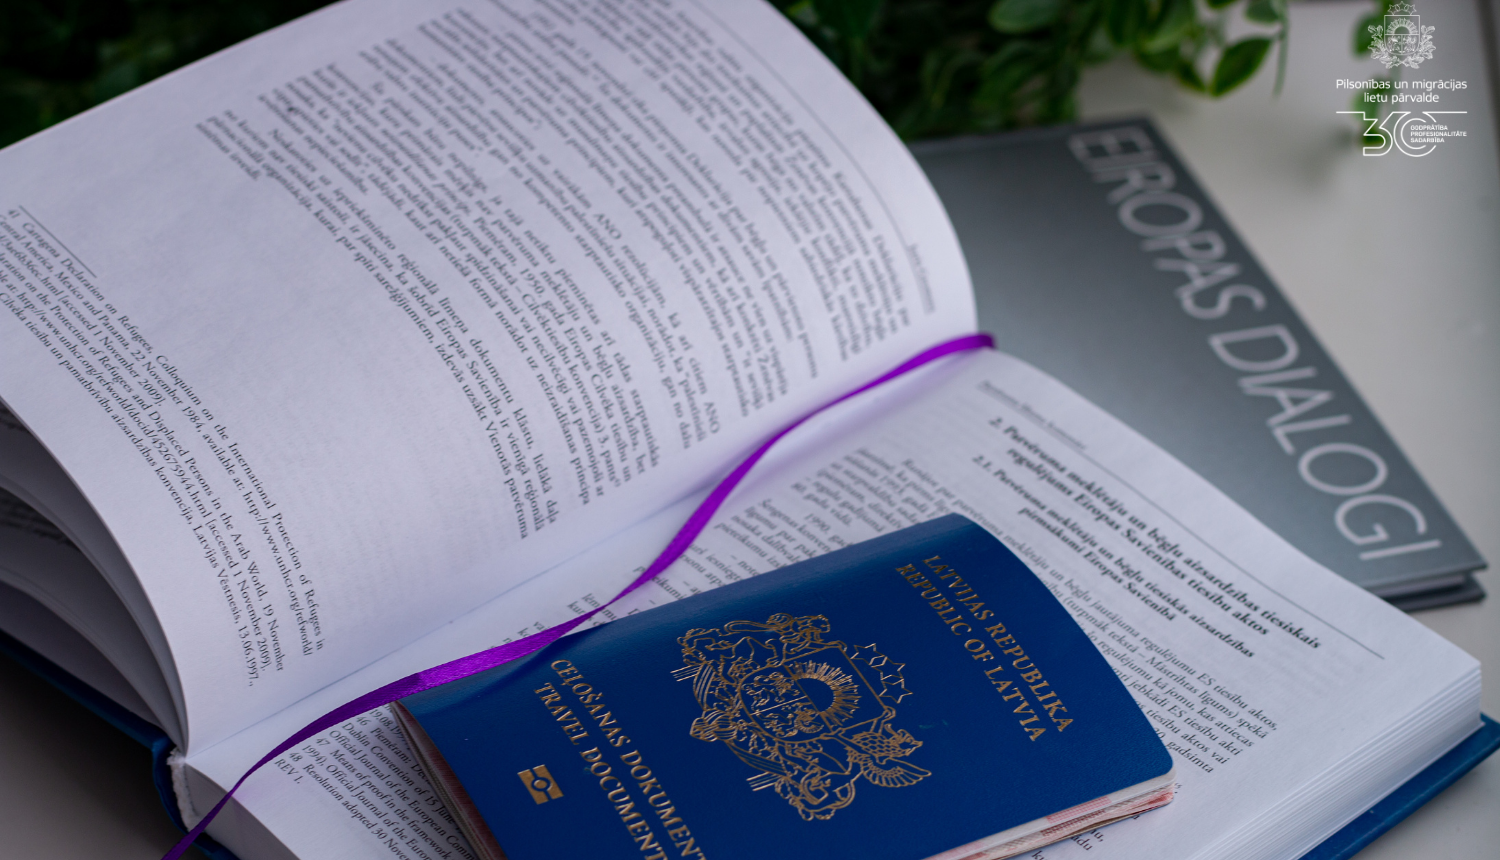 Atvērta grāmata, tajā ielikta zilā pase ar nosaukumu "Ceļošanas dokuments"